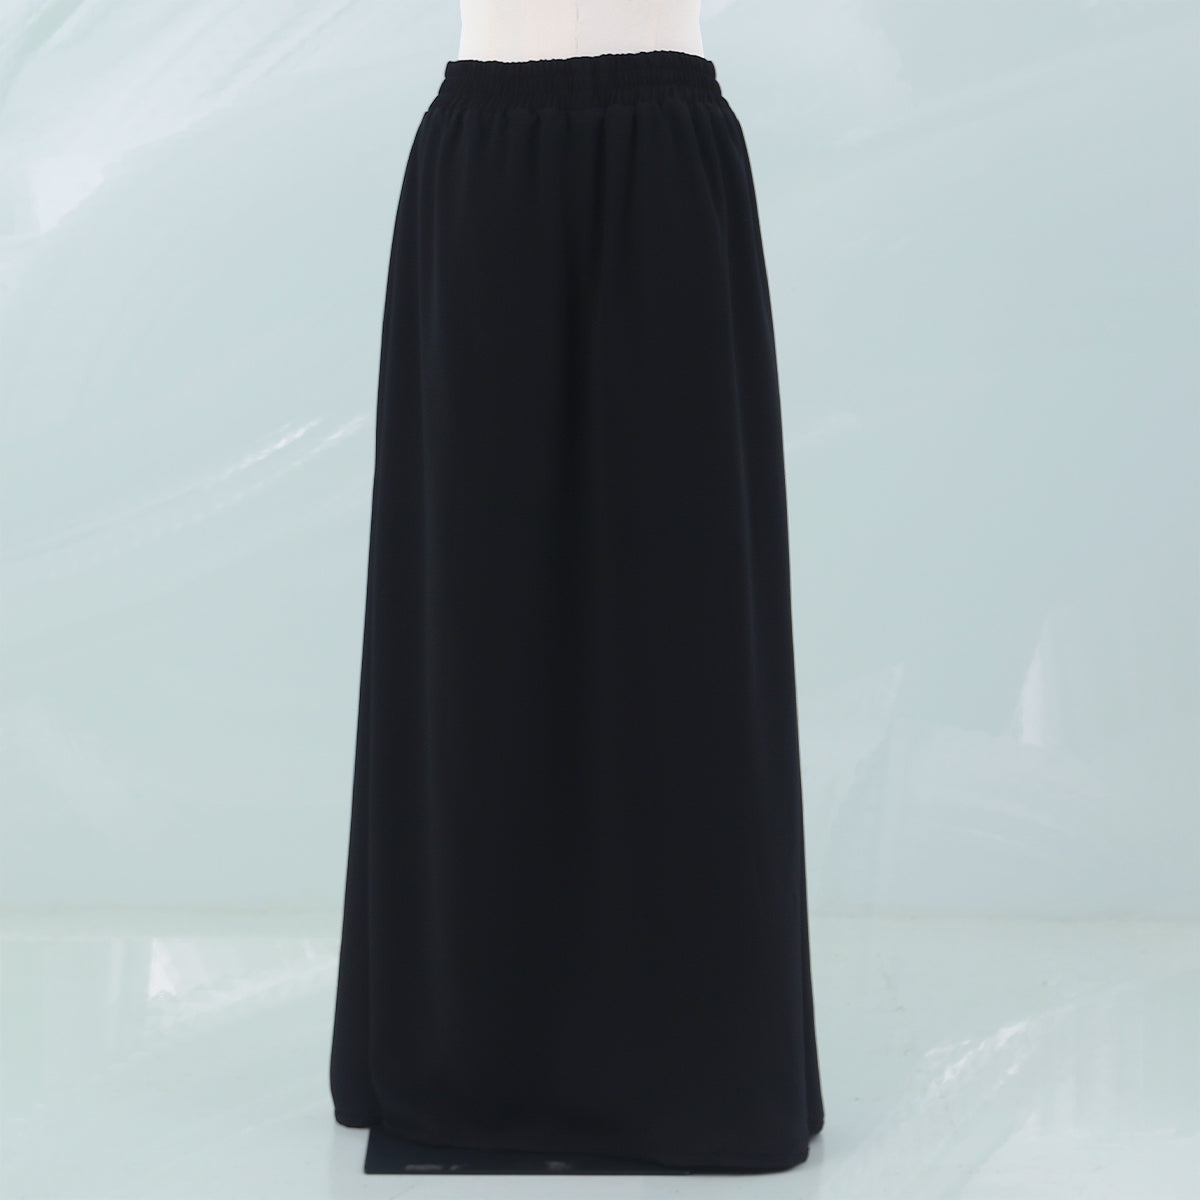 Nabila Skirt - Black